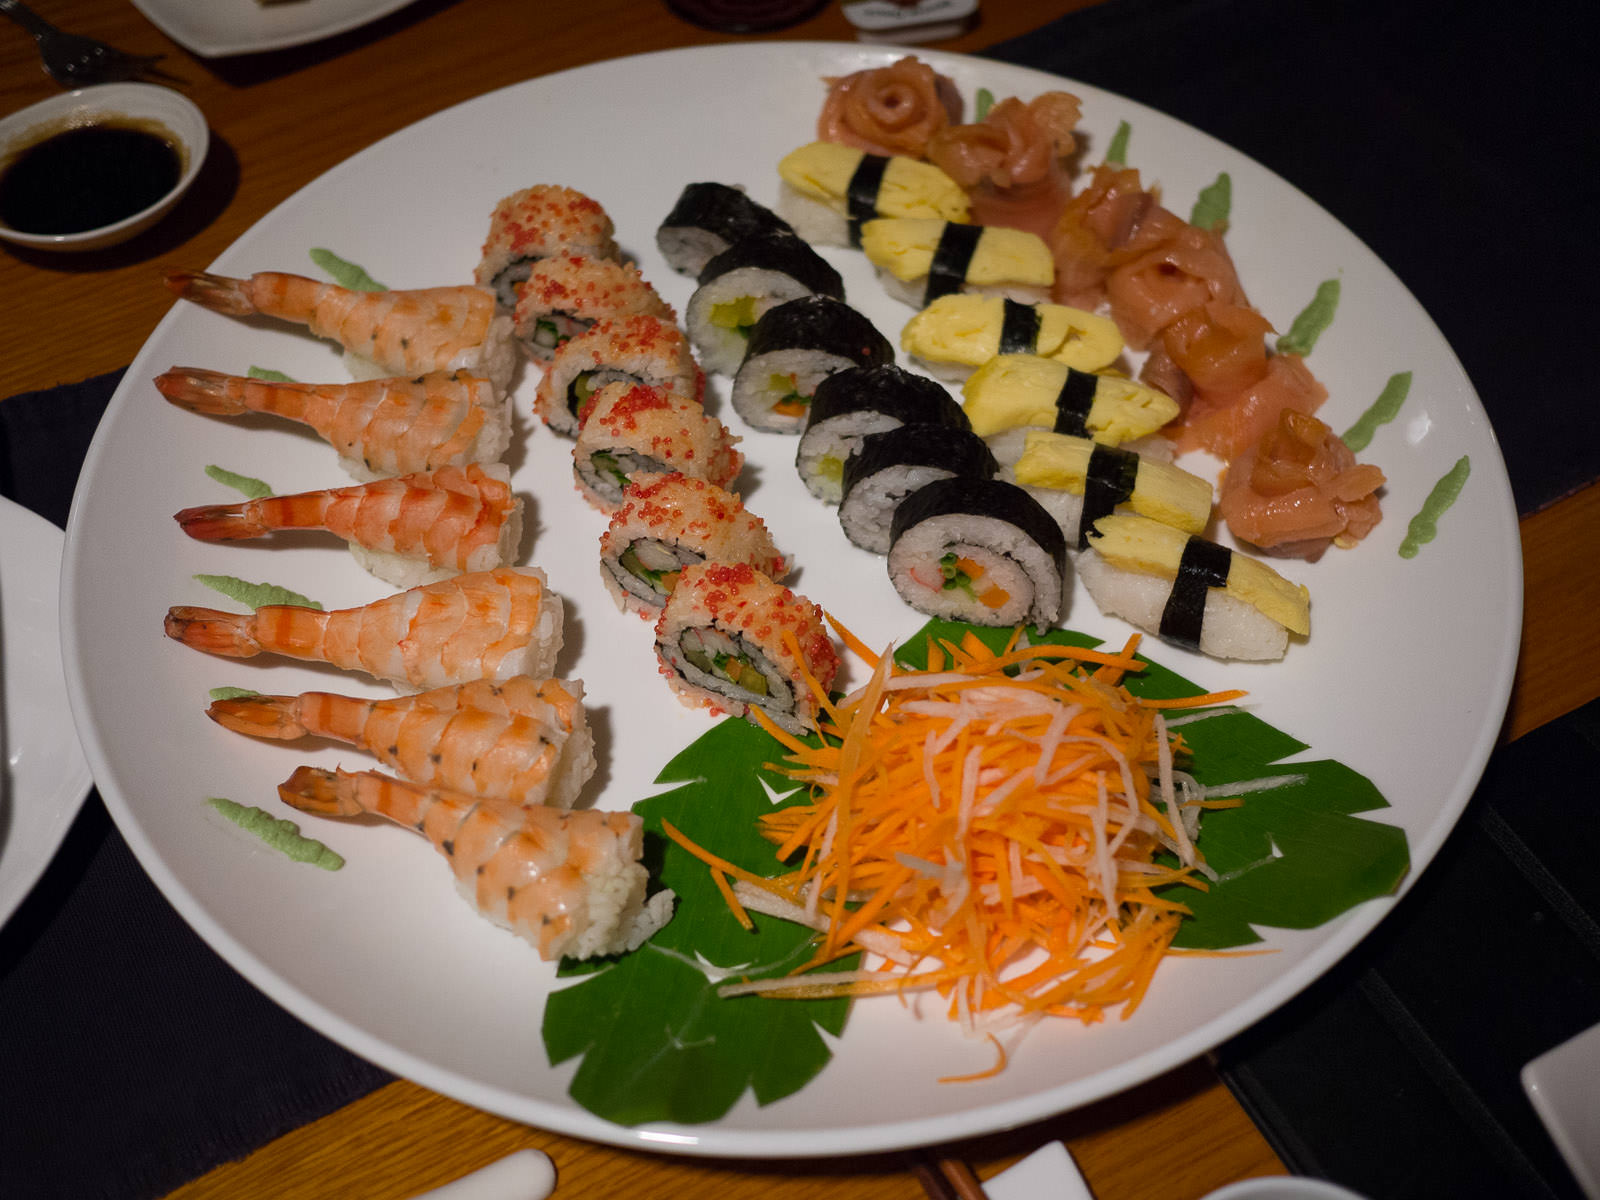 Shared sushi platter